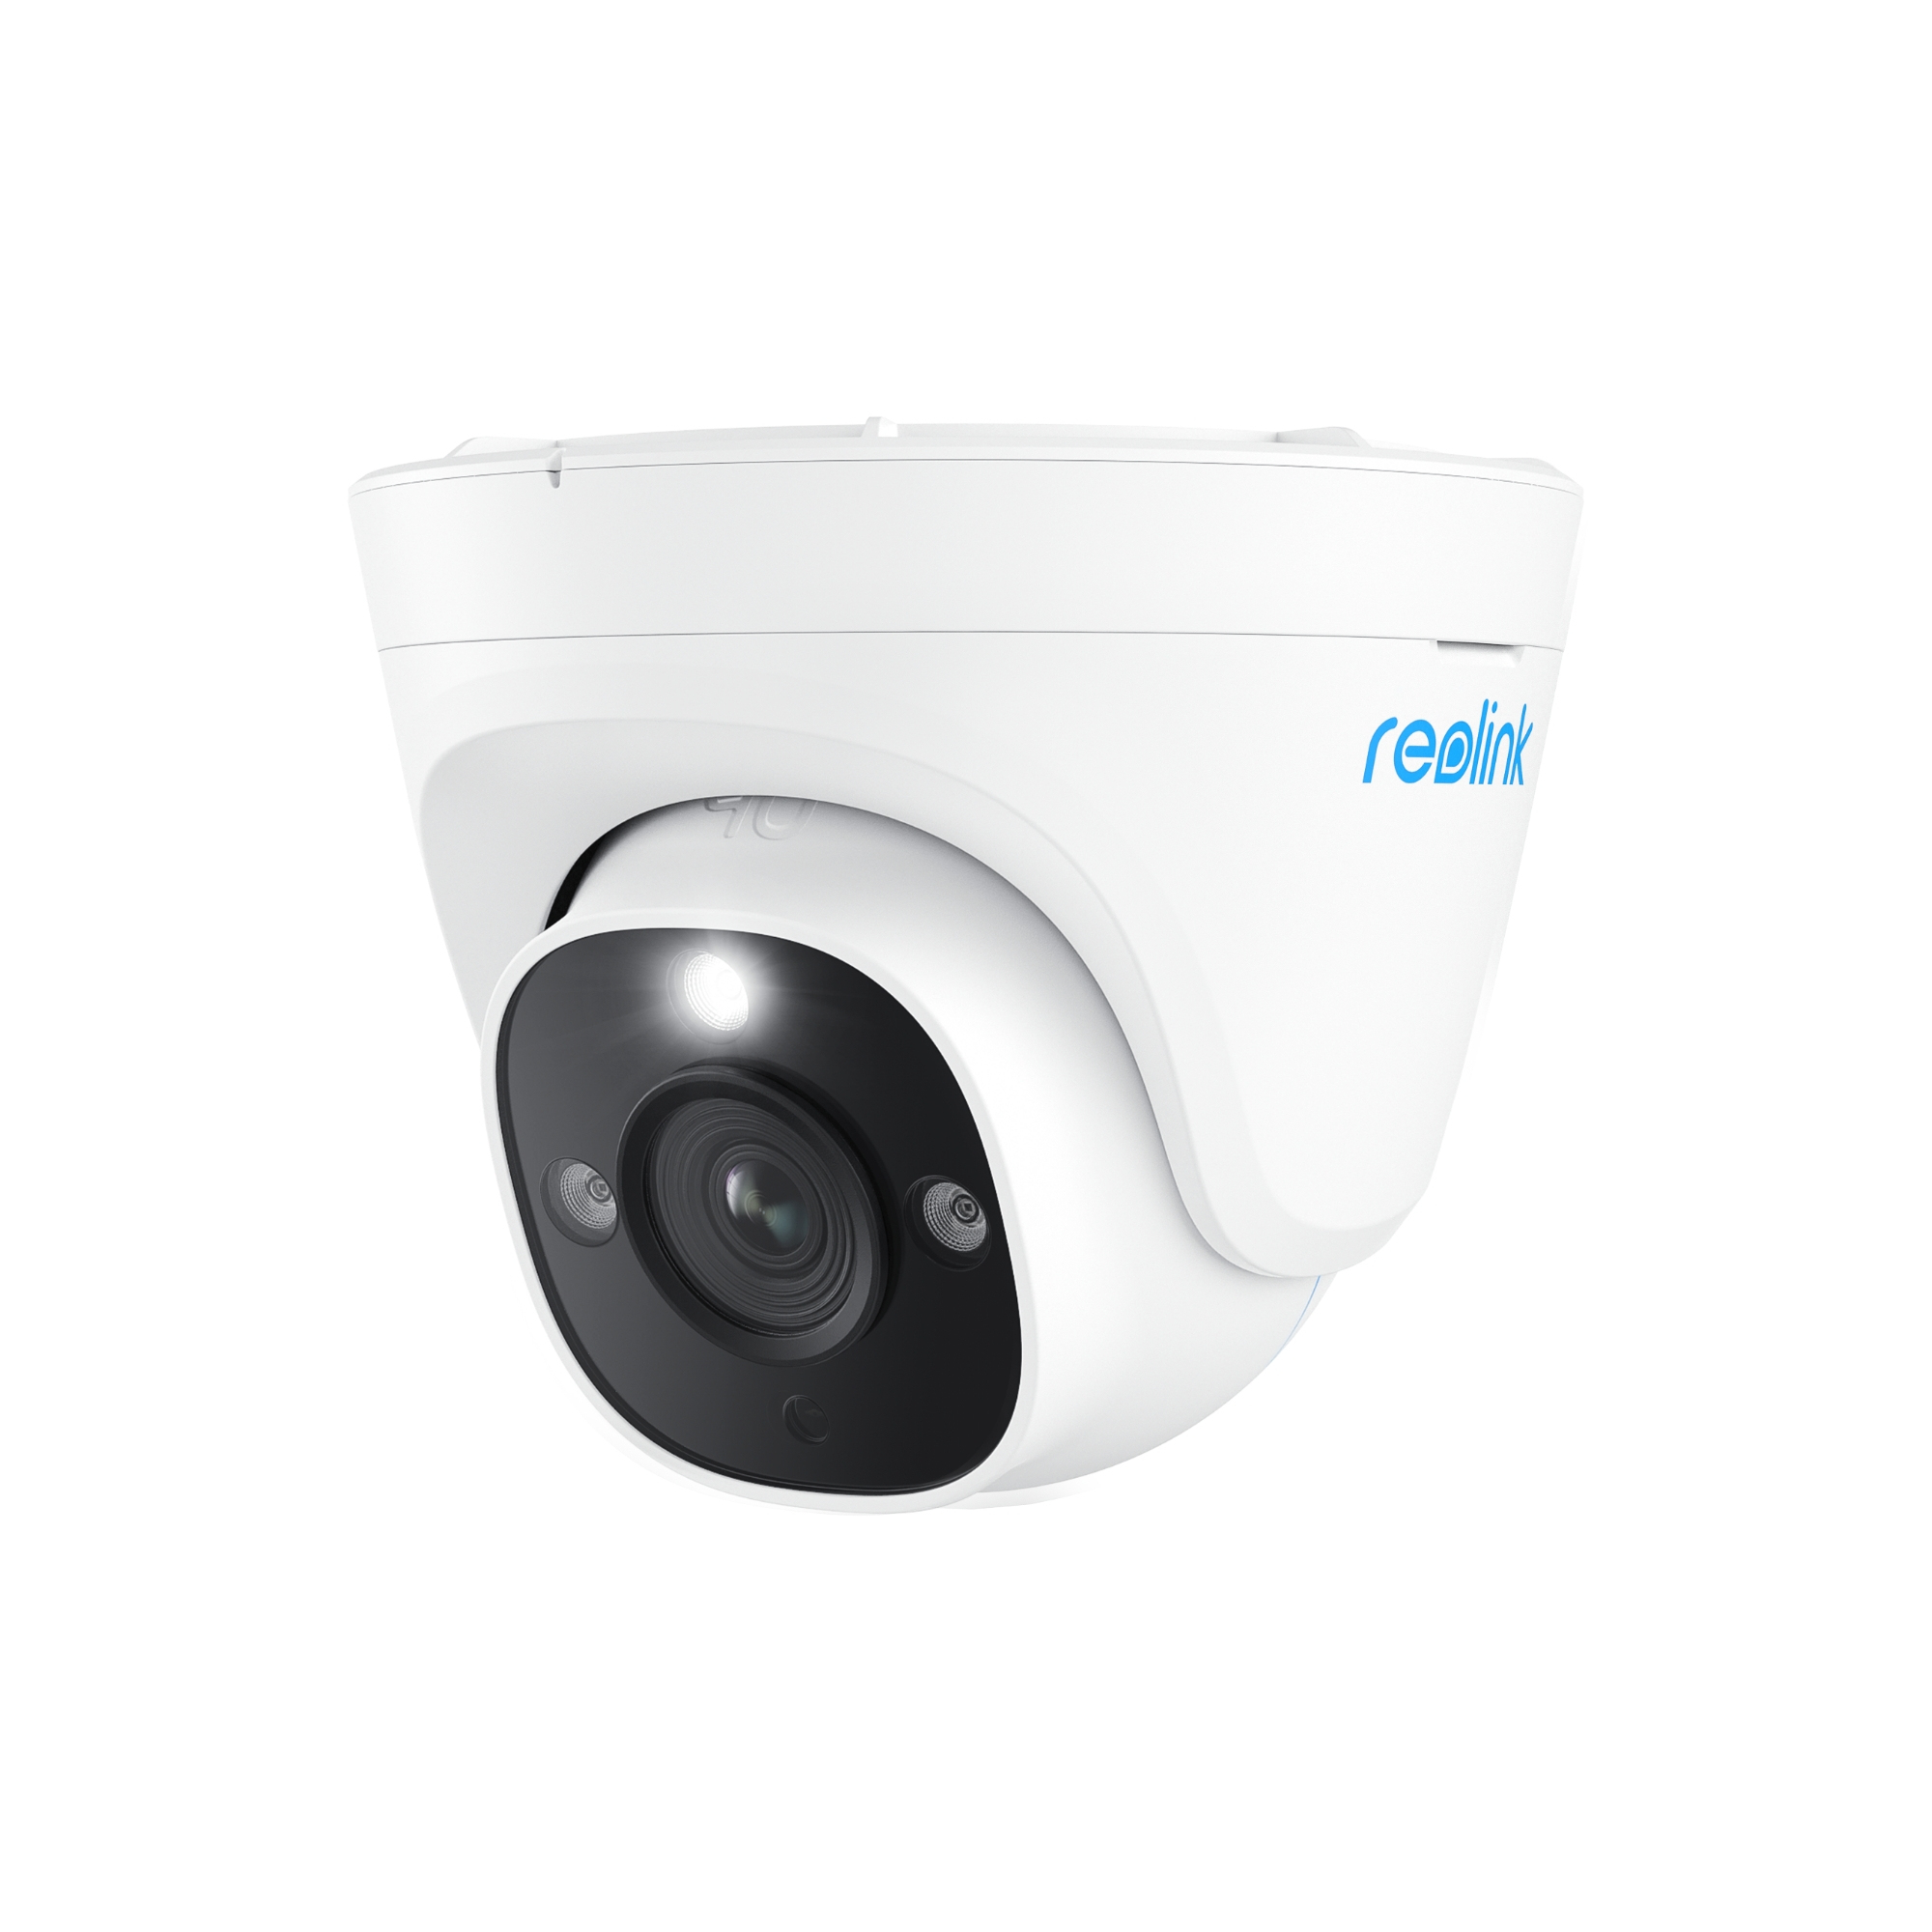 Reolink Reolink P334 - Slimme 4K 8MP Ultra HD PoE-beveiligingscamera voor buiten ondersteunt 256 GB en detectie van personen/voertuigen/huisdieren